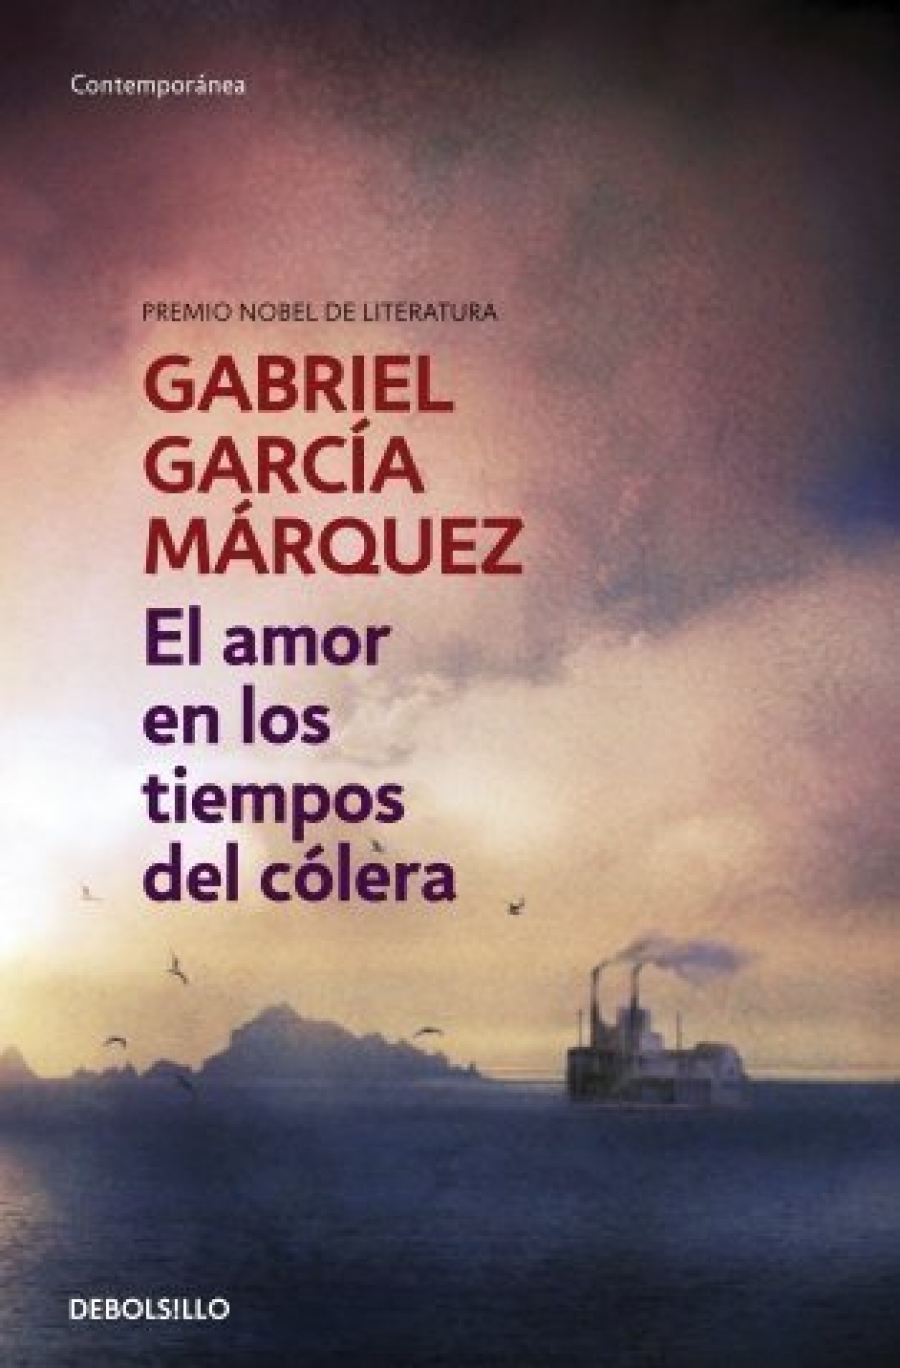 Gabriel Garcia Marquez El amor en los tiempos del colera 